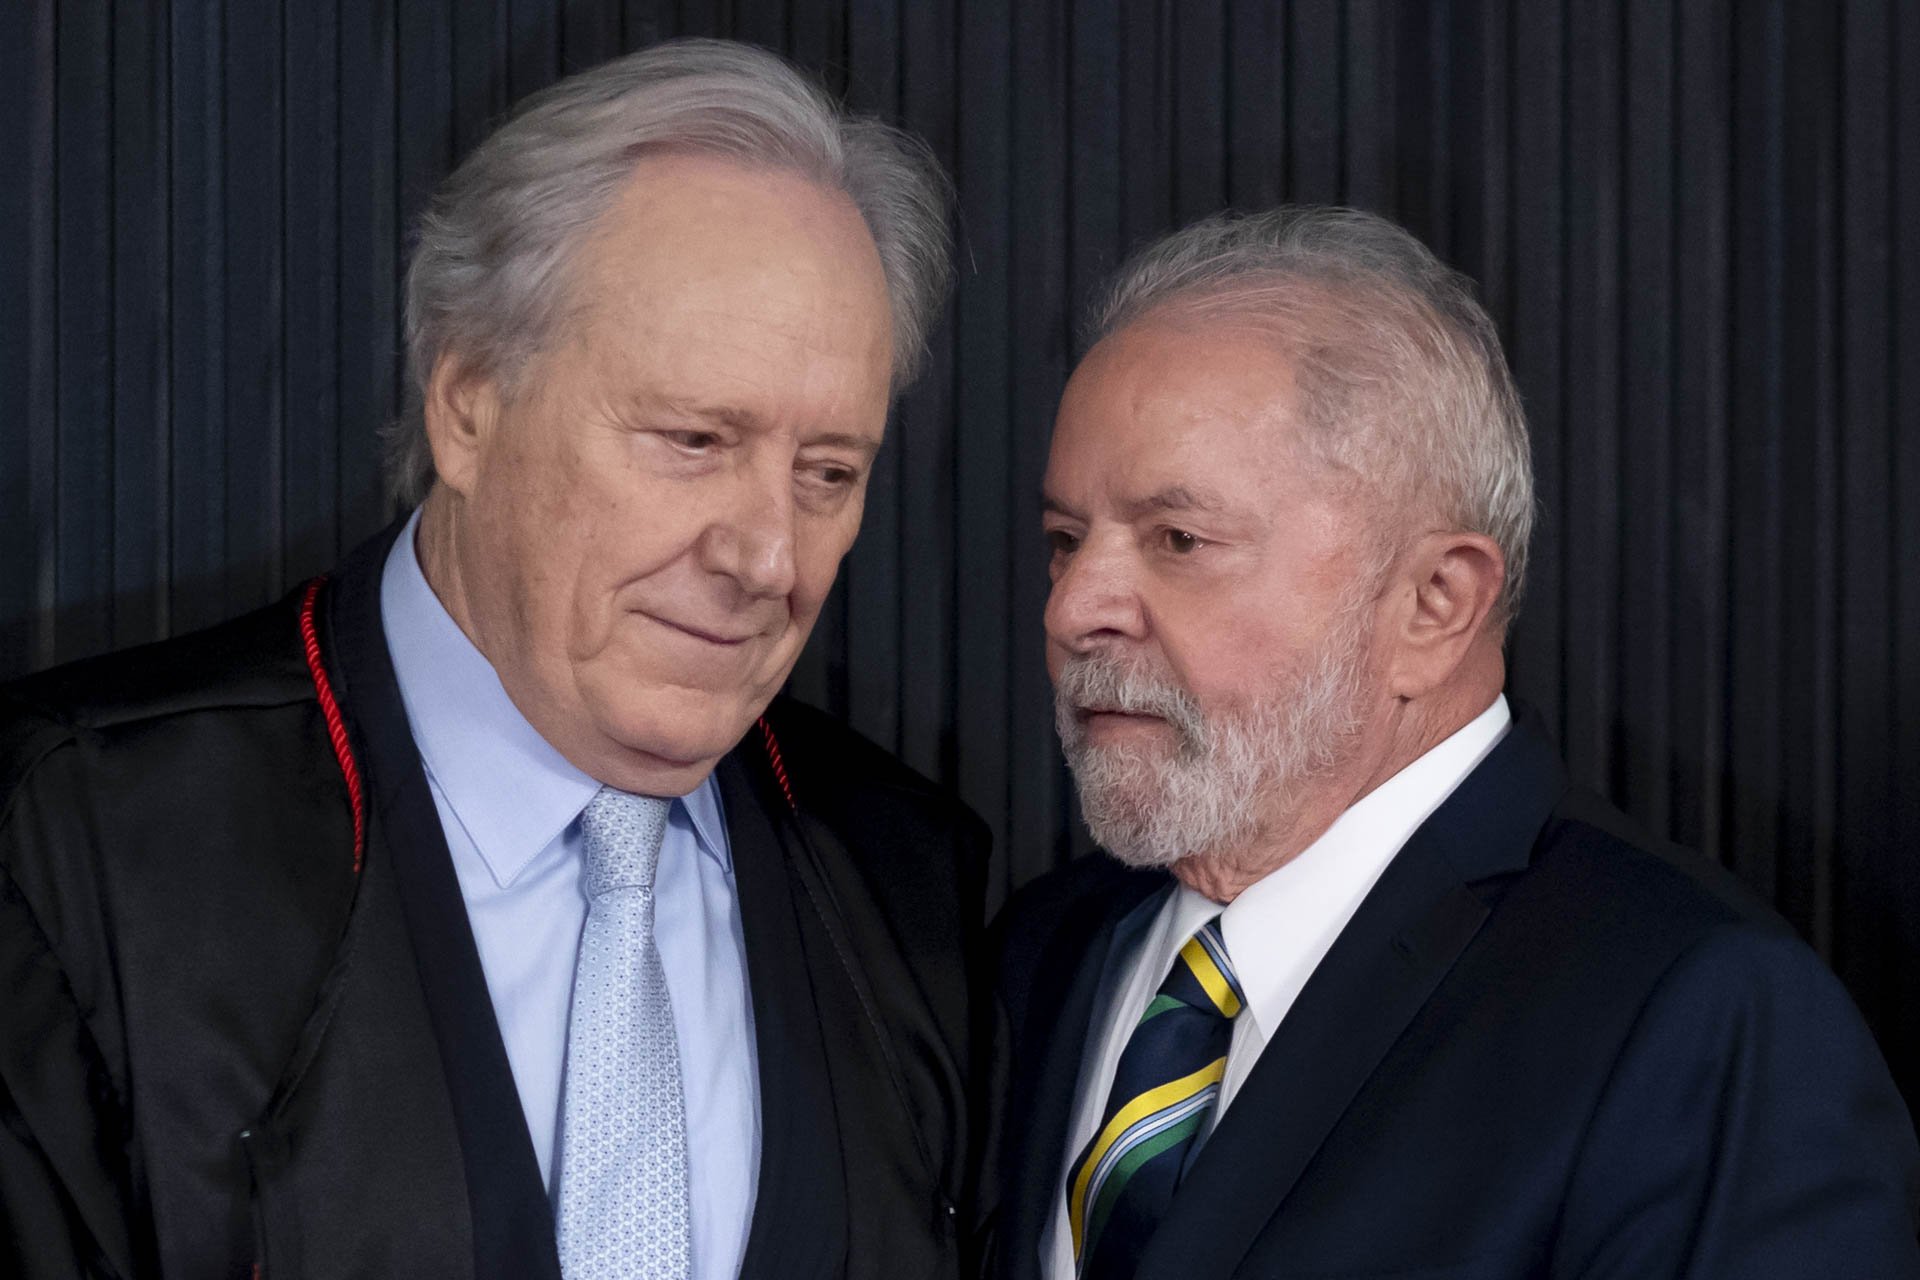 Ricardo Lewandowski e o presidente Lula durante sessão no TSE - Metrópoles